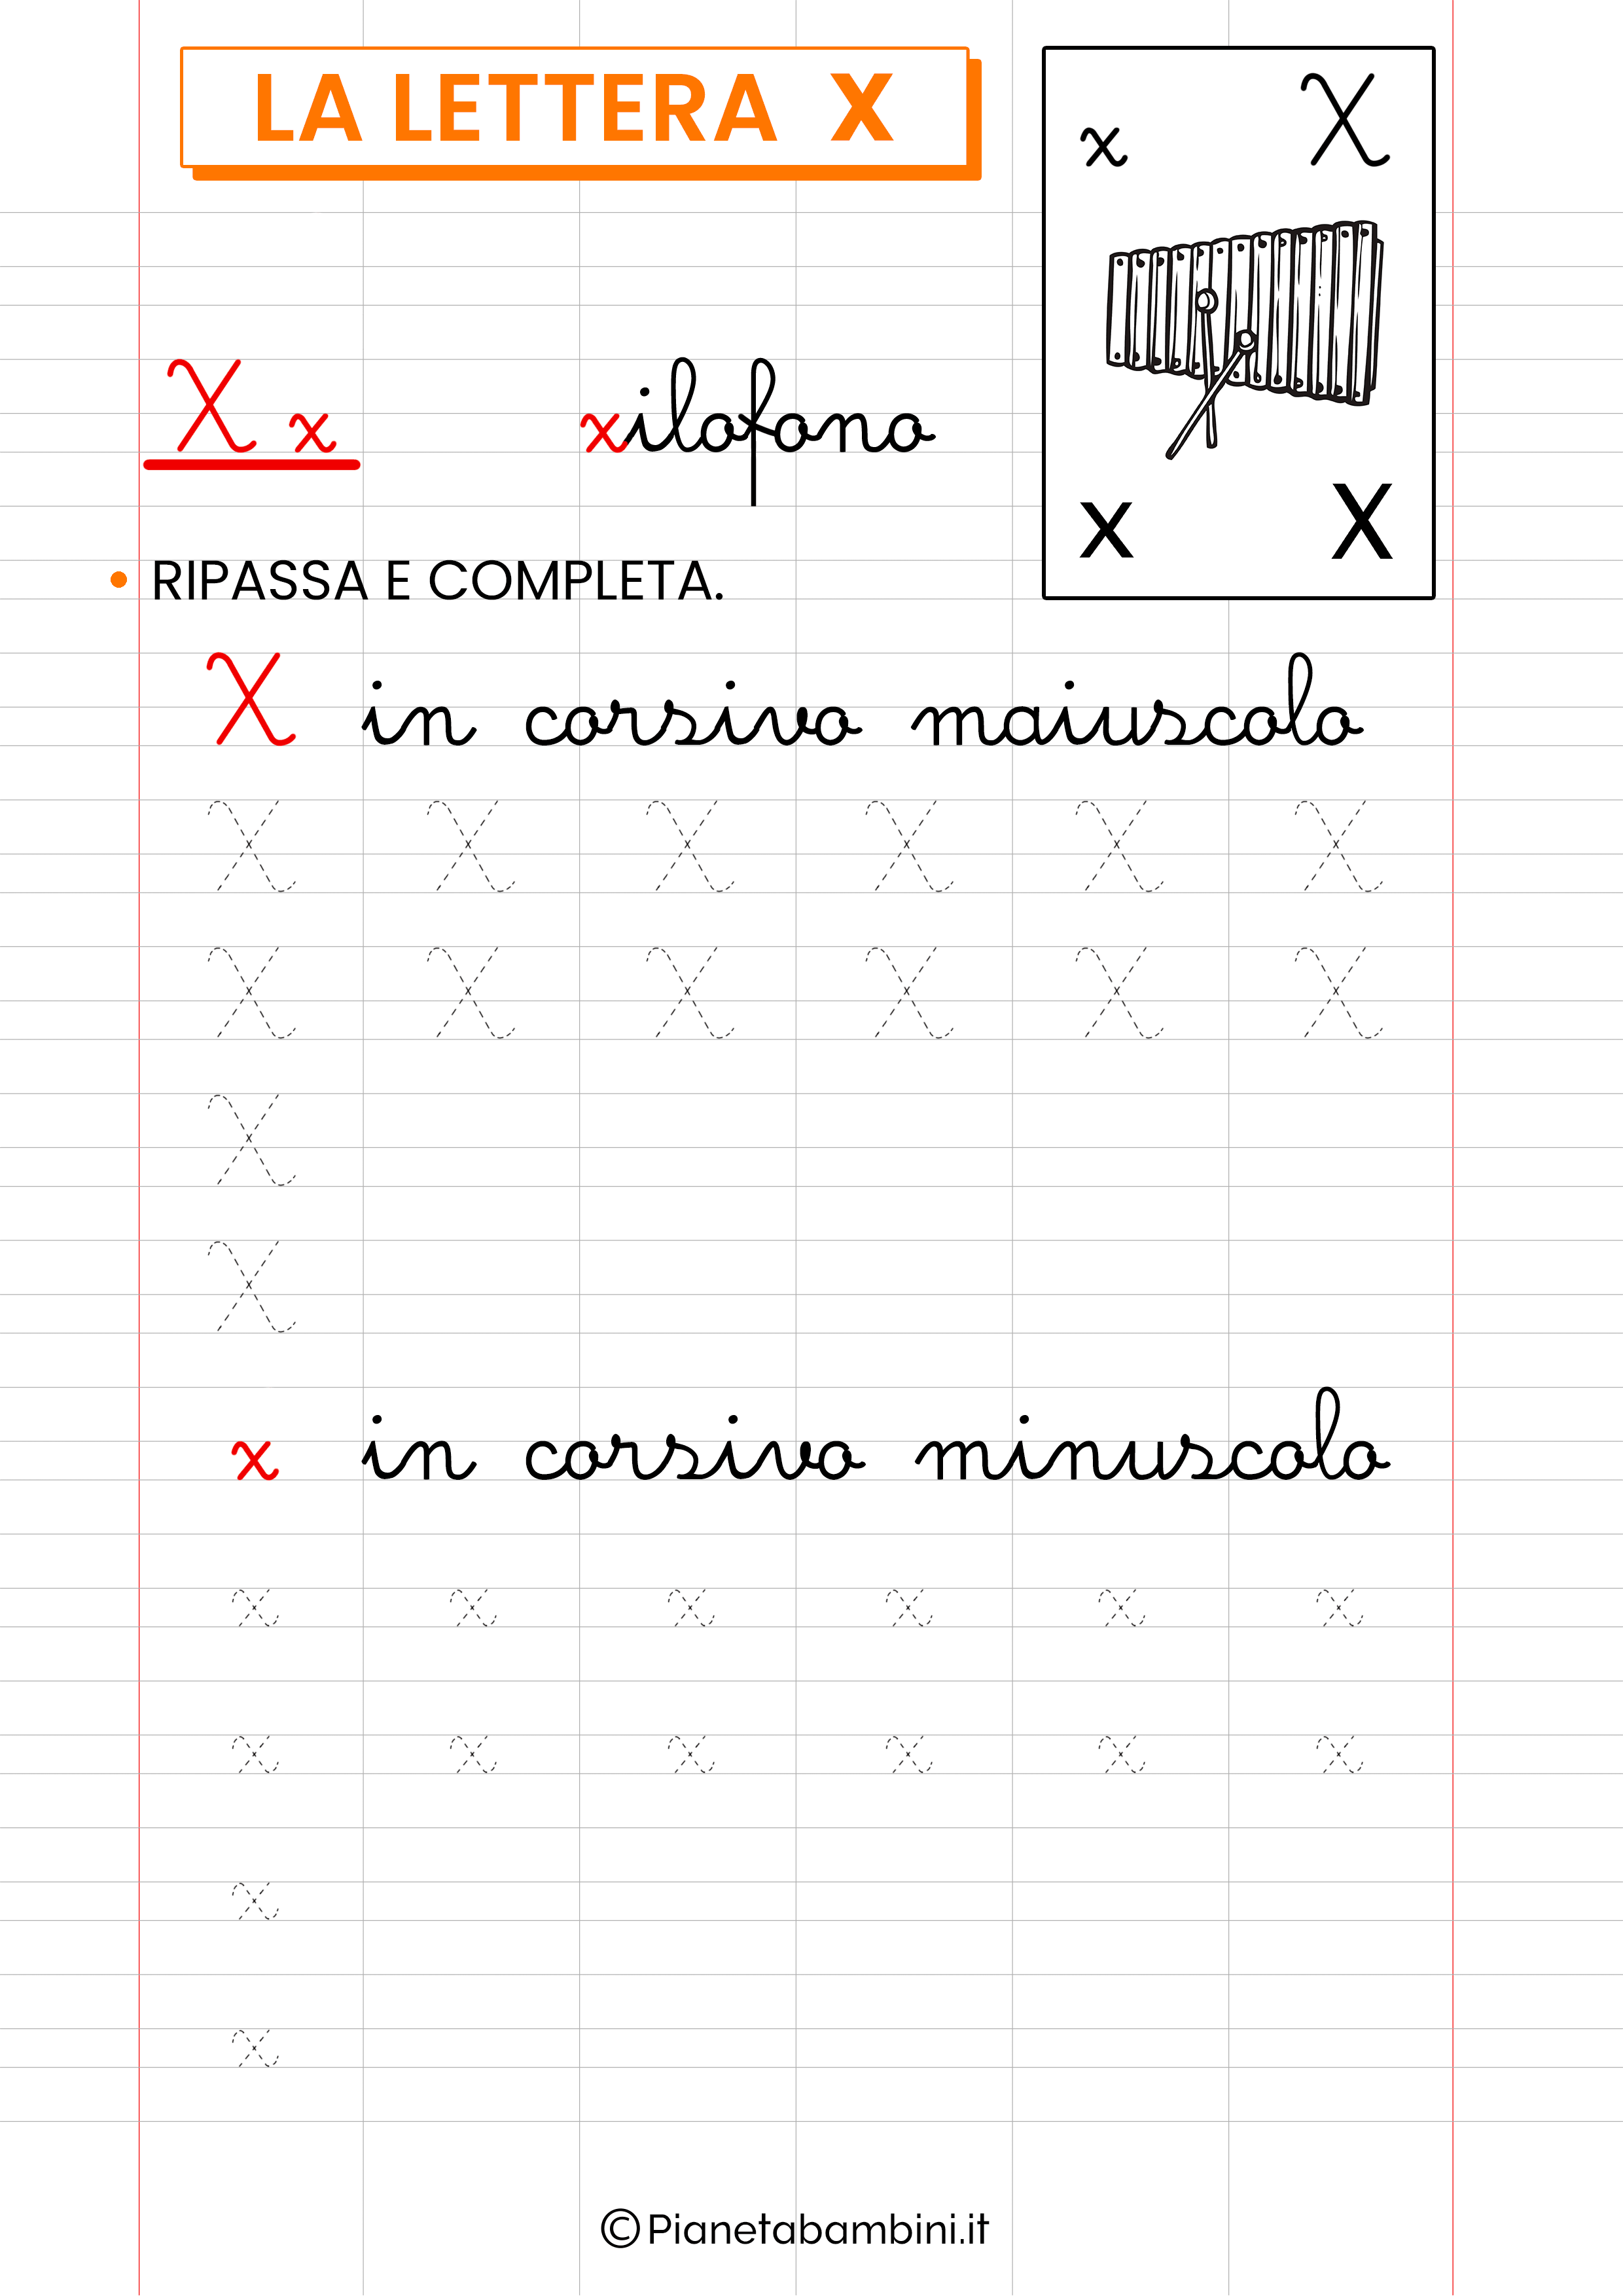 Scheda di pregrafismo sulla lettera straniera X in corsivo